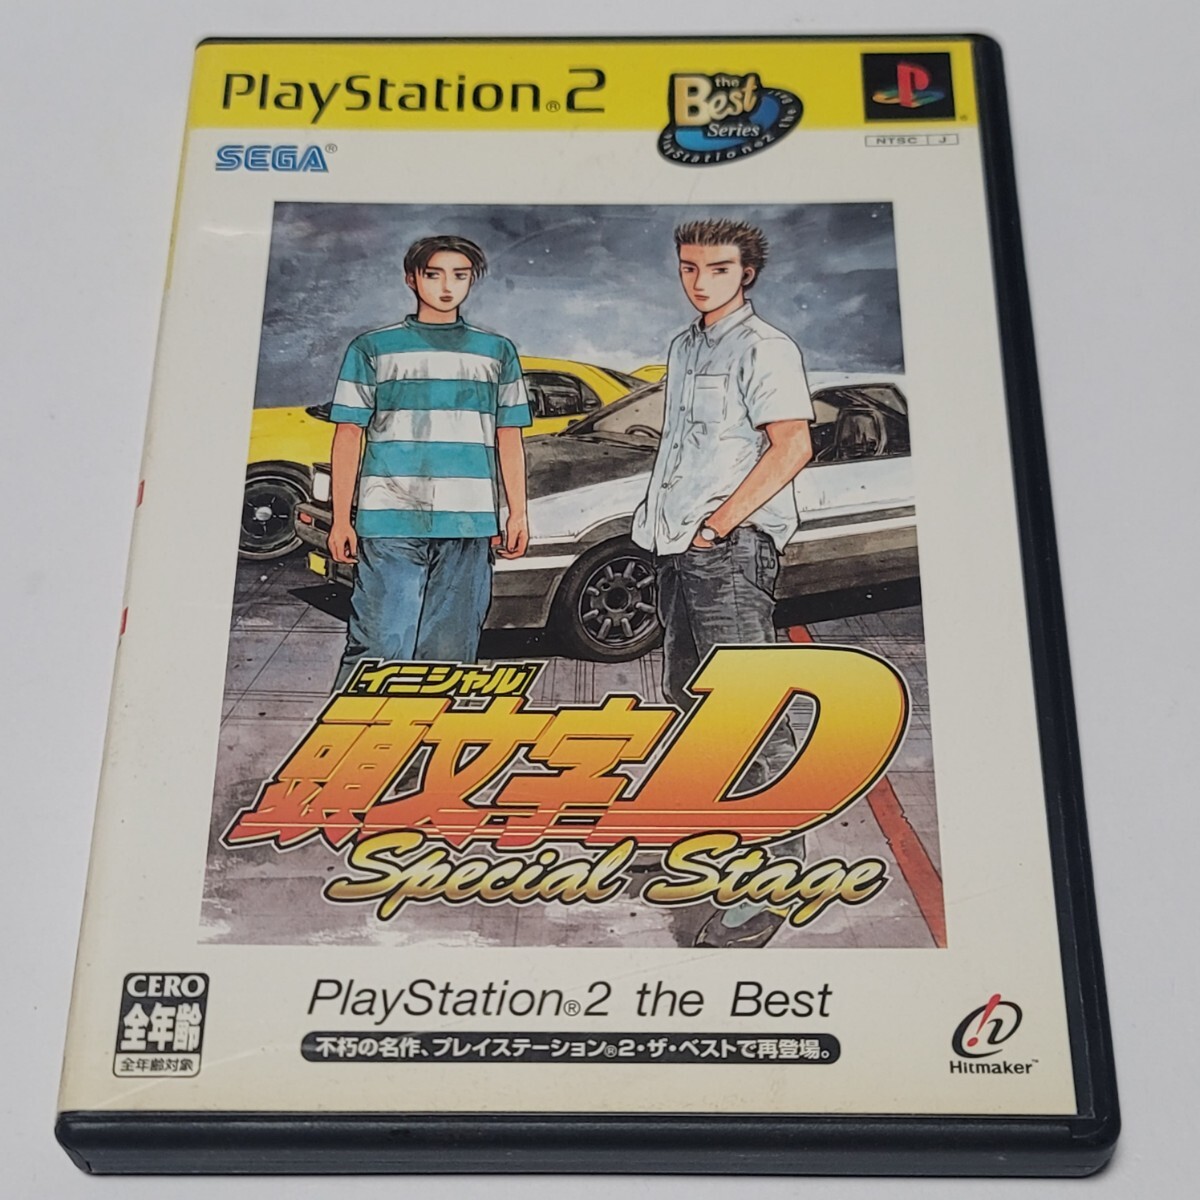 《送料込み》ベスト版 PS2 頭文字D Special Stage / PlayStation 2 the Best_画像1